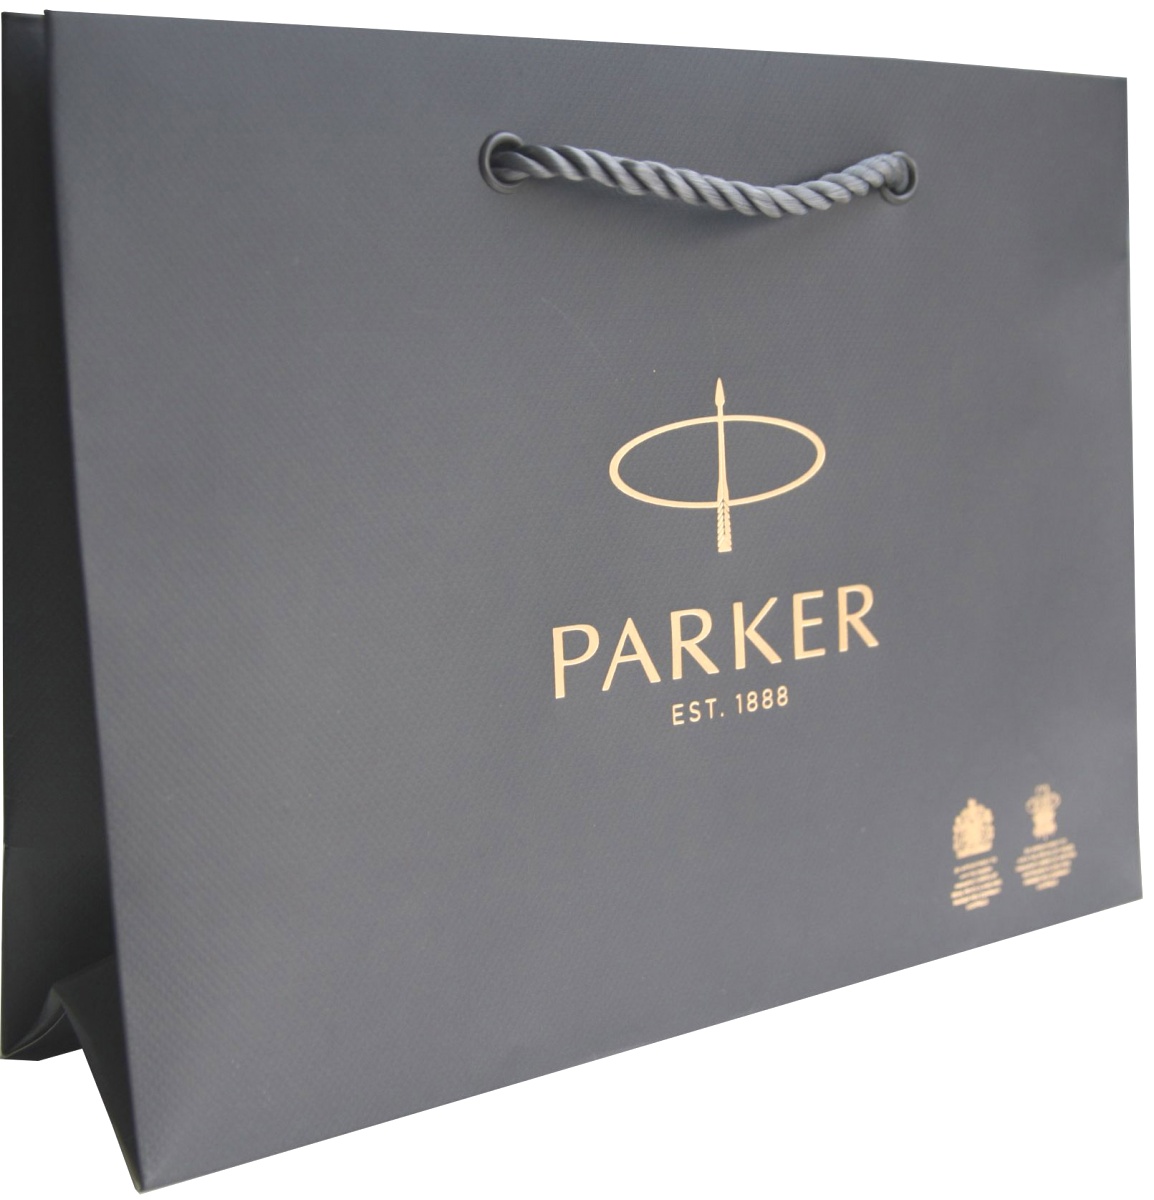  Фирменный подарочный пакет PARKER, Большой, бумажный, серый, 30*21*10 см.